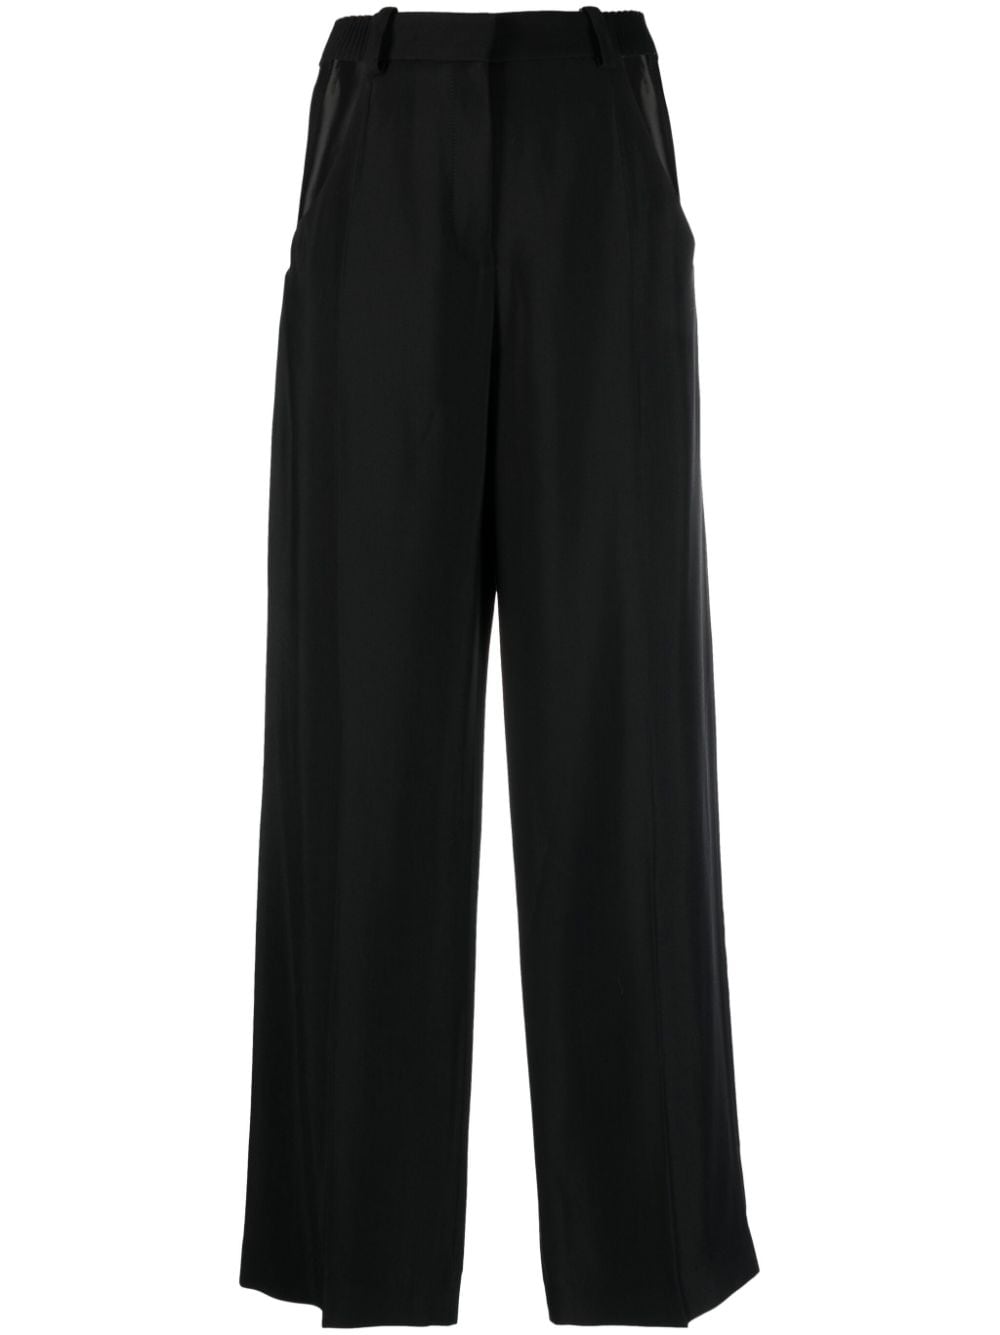 Sleek Cut-Out Trousers in Crisp Black for Women